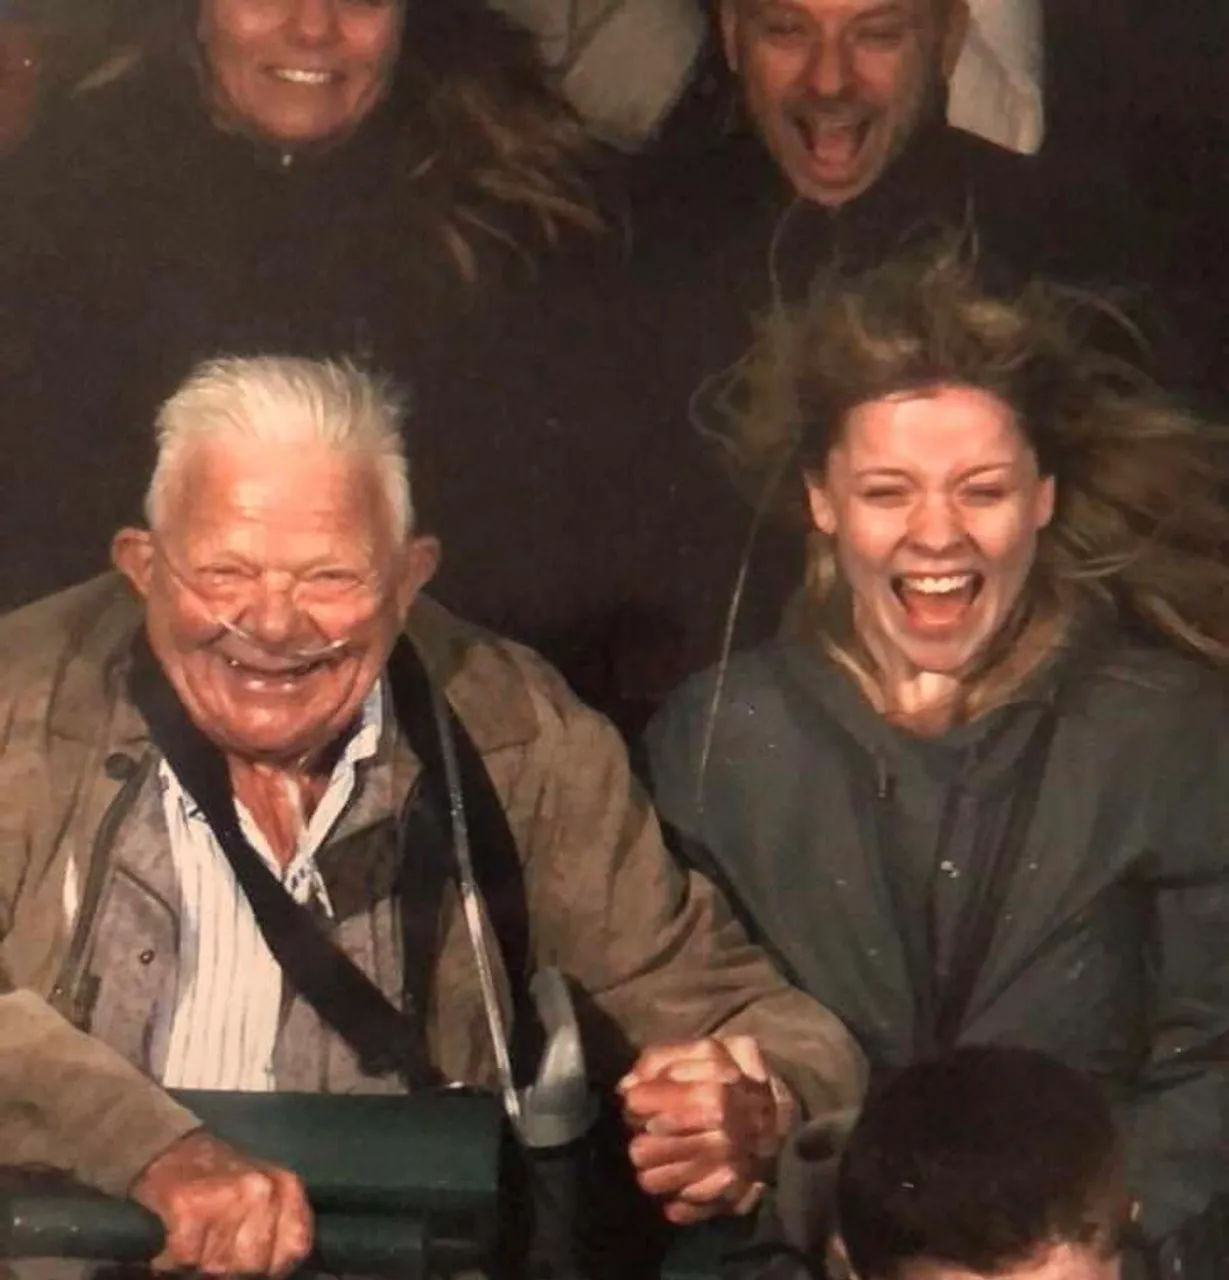 "Moj 74-godišnji djed i ja na 'vlaku smrti' - bio je tako uzbuđen!"